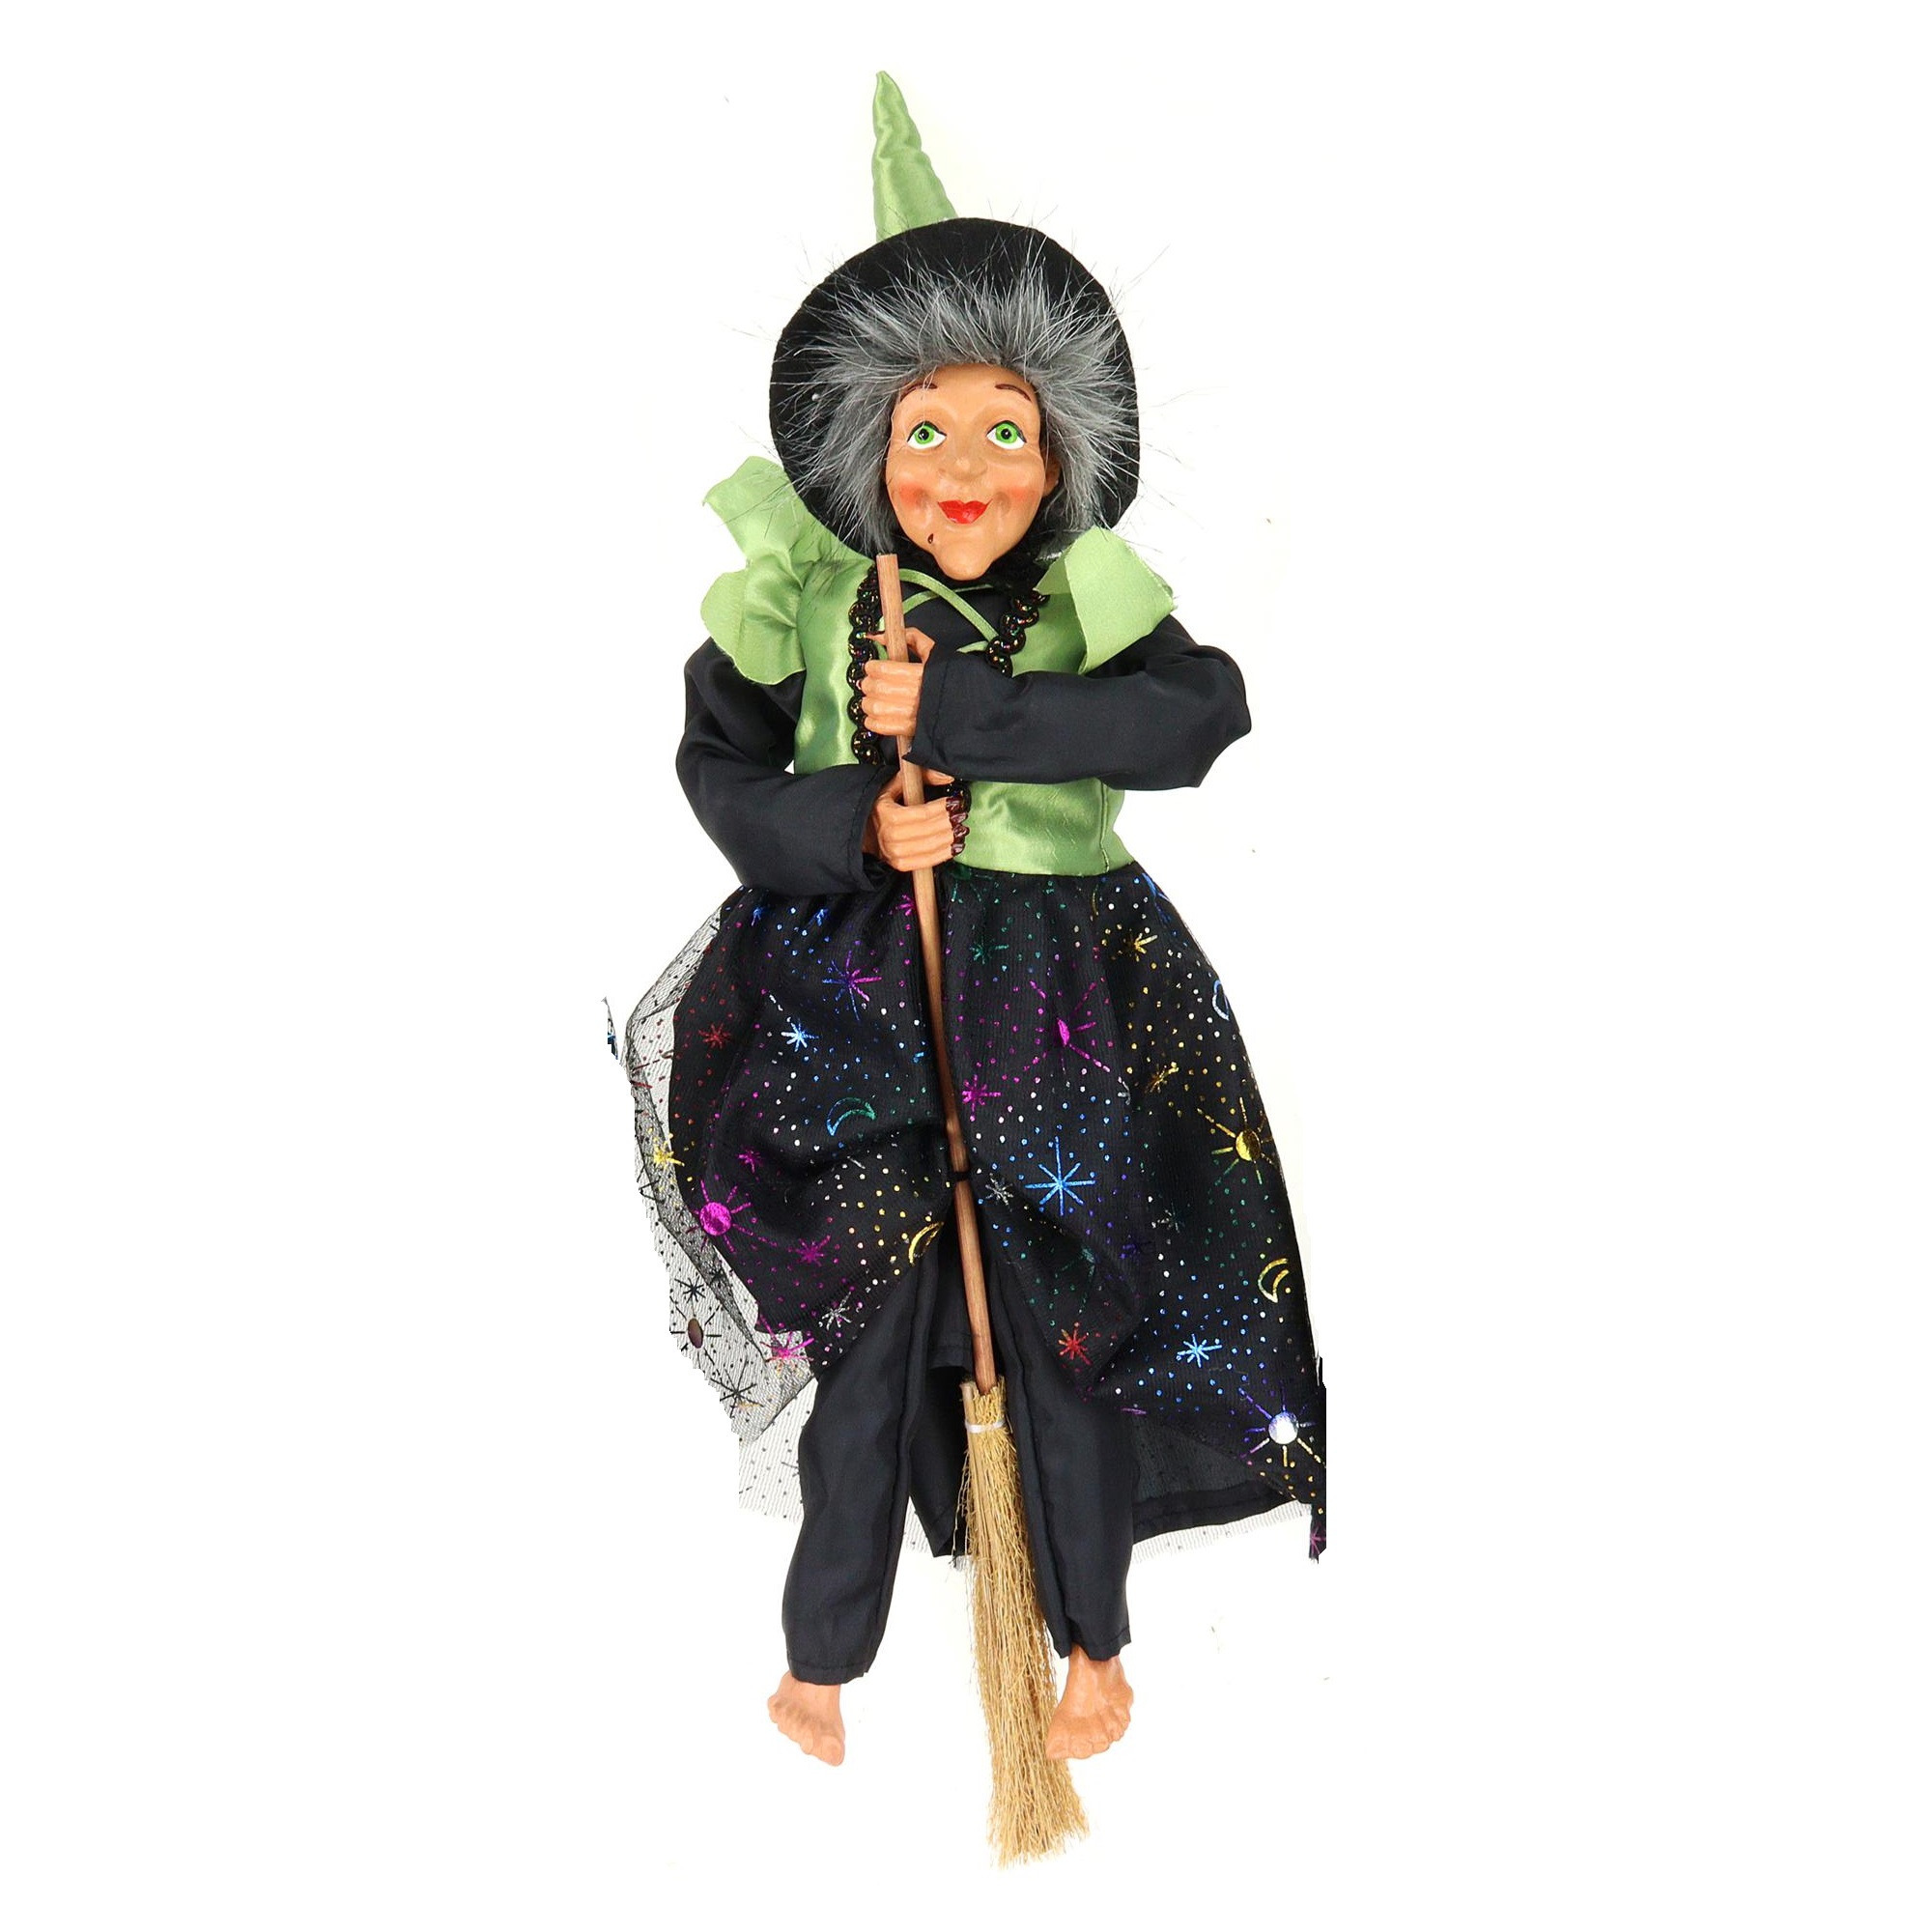 Halloween decoratie heksen pop - vliegend op bezem - 40 cm - zwart/groen